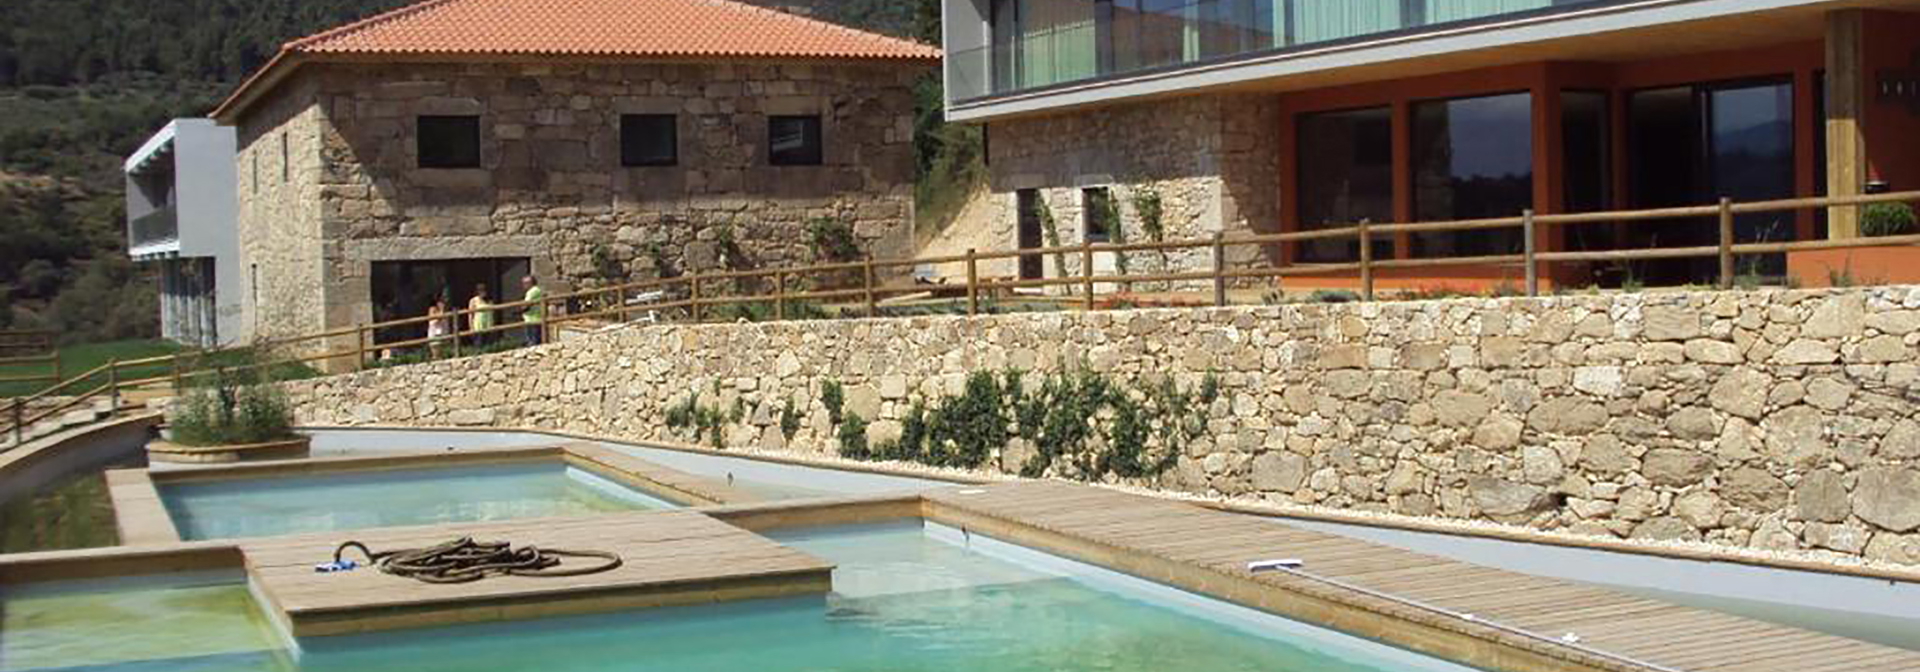 douro_dalen_douro_cister_hotel_and_spa_pool_01